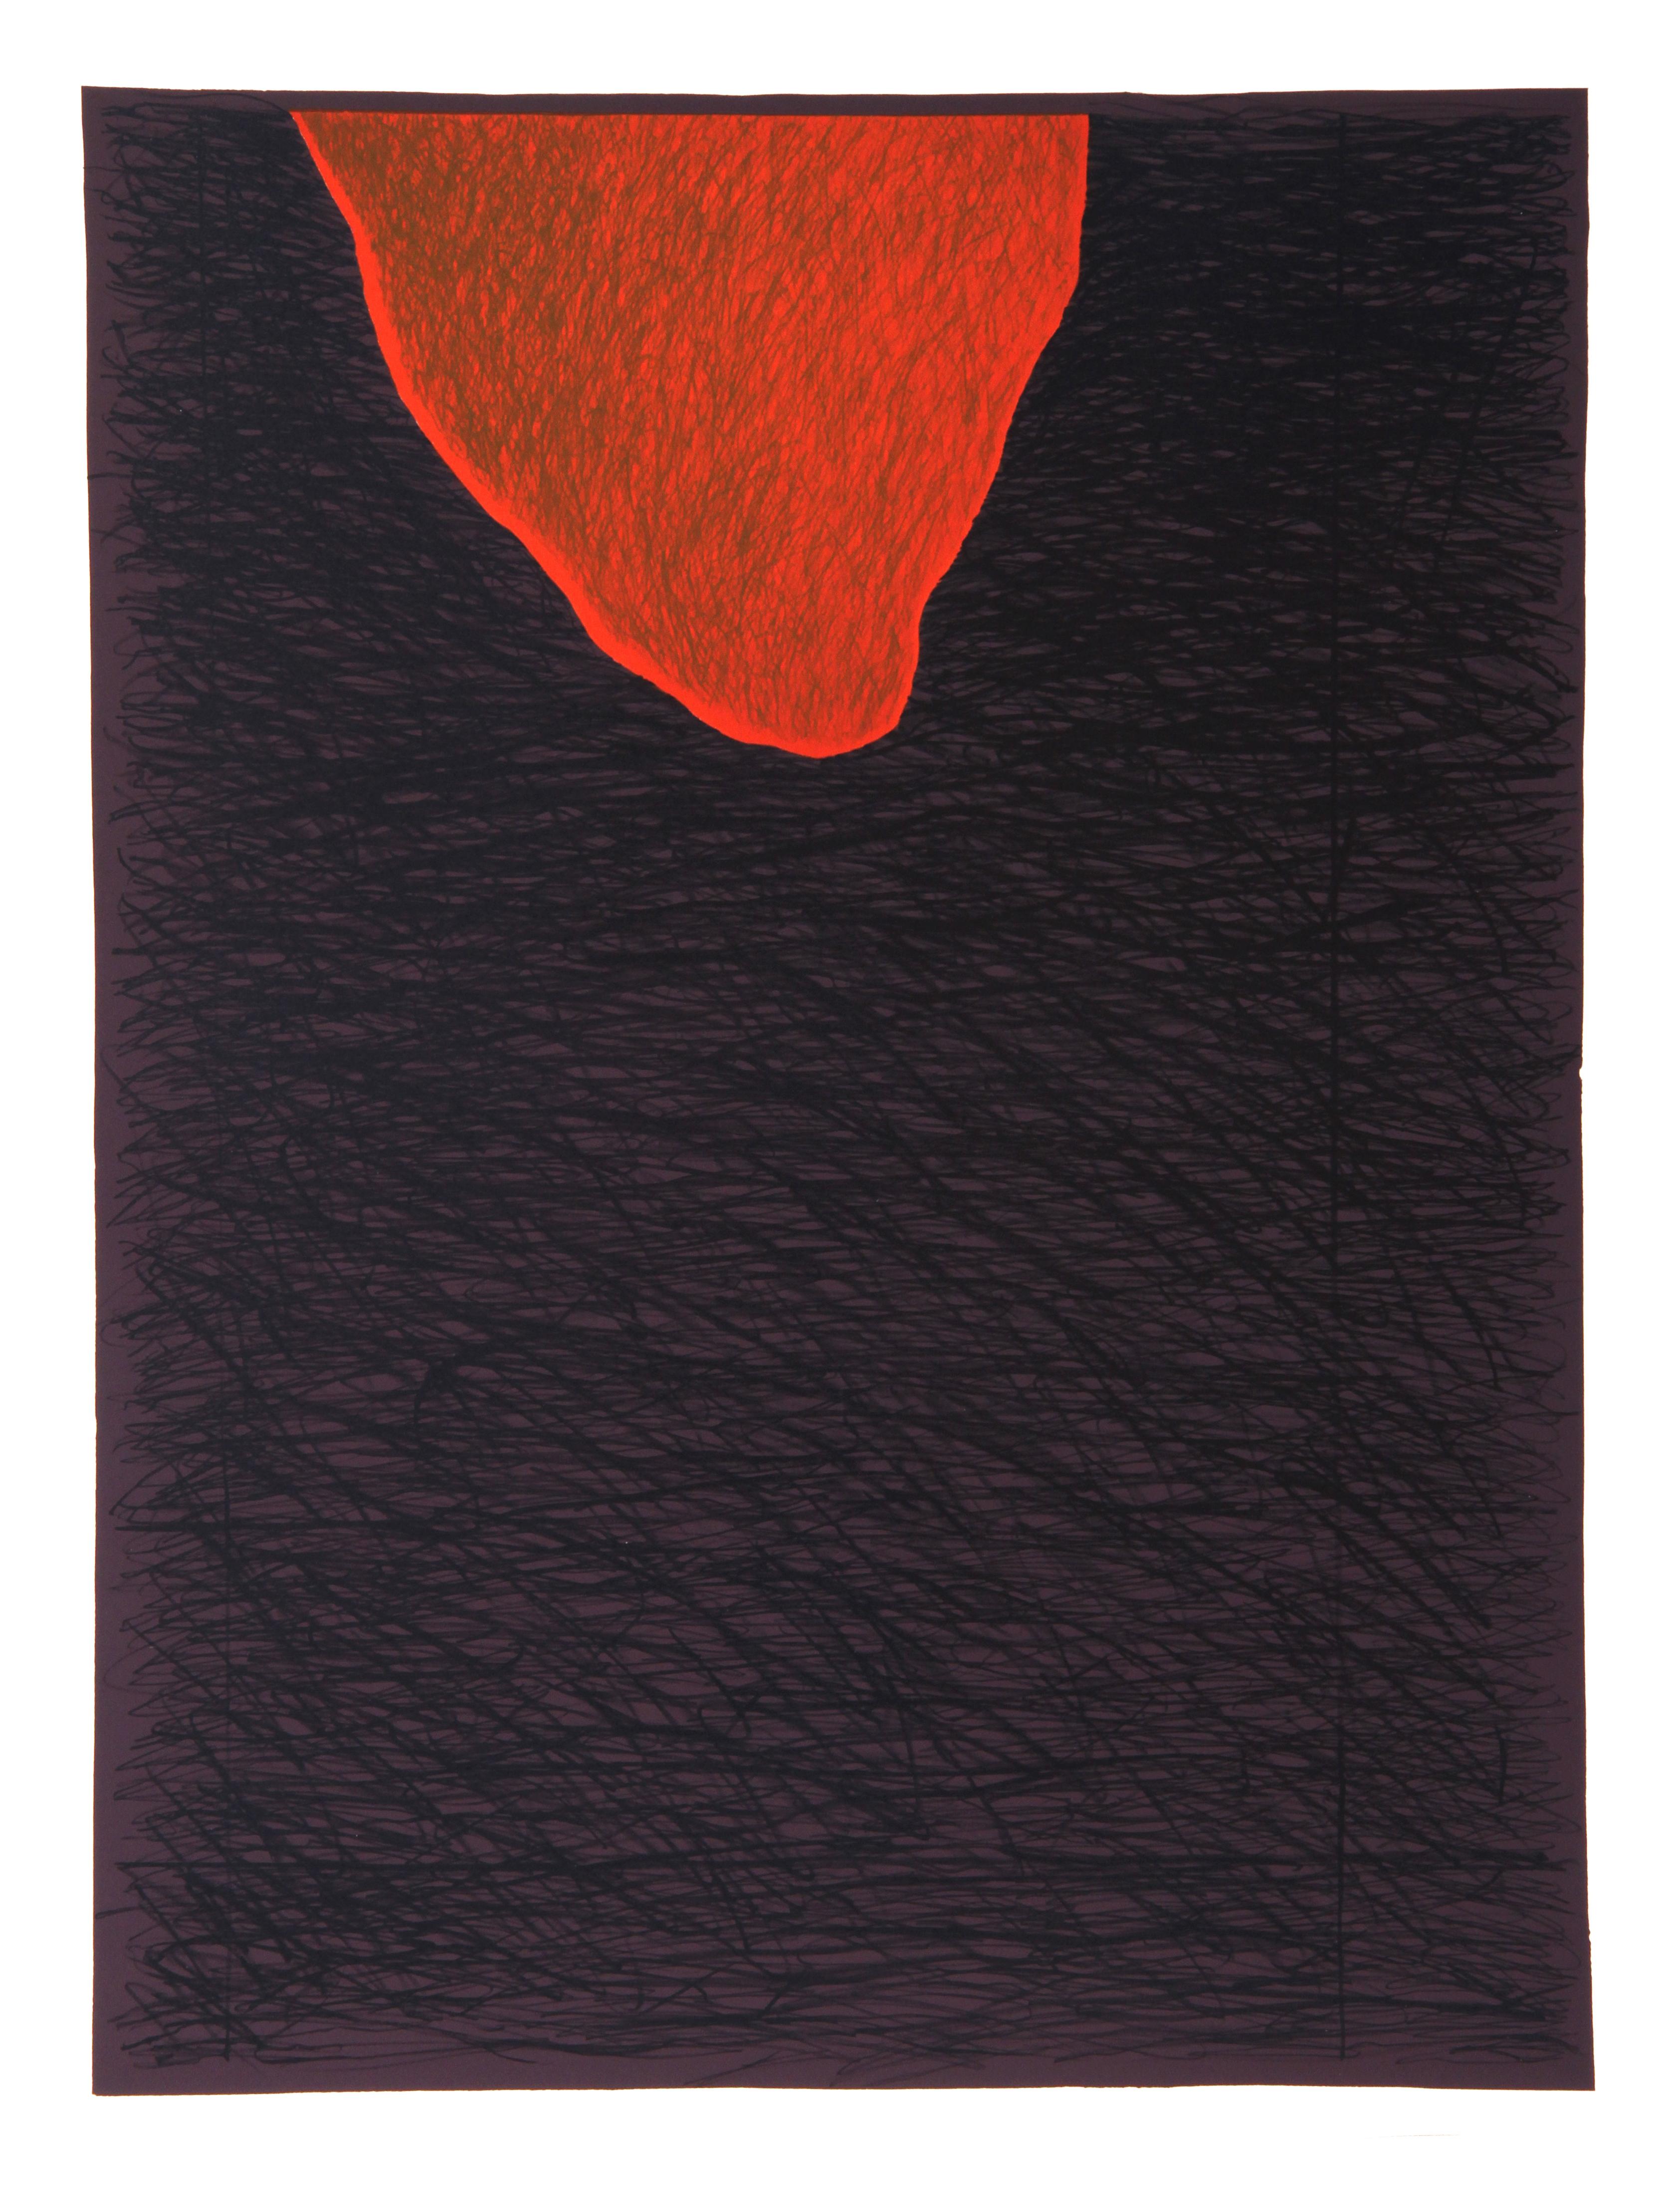 Künstler: Bruce Porter, Amerikaner (1948 - )
Titel: Unbetitelt II
Medium: Lithographie, mit Bleistift signiert und nummeriert
Auflage: 15
Bildgröße: 24 x 18 Zoll
Größe: 28 x 22 in. (71,12 x 55,88 cm)